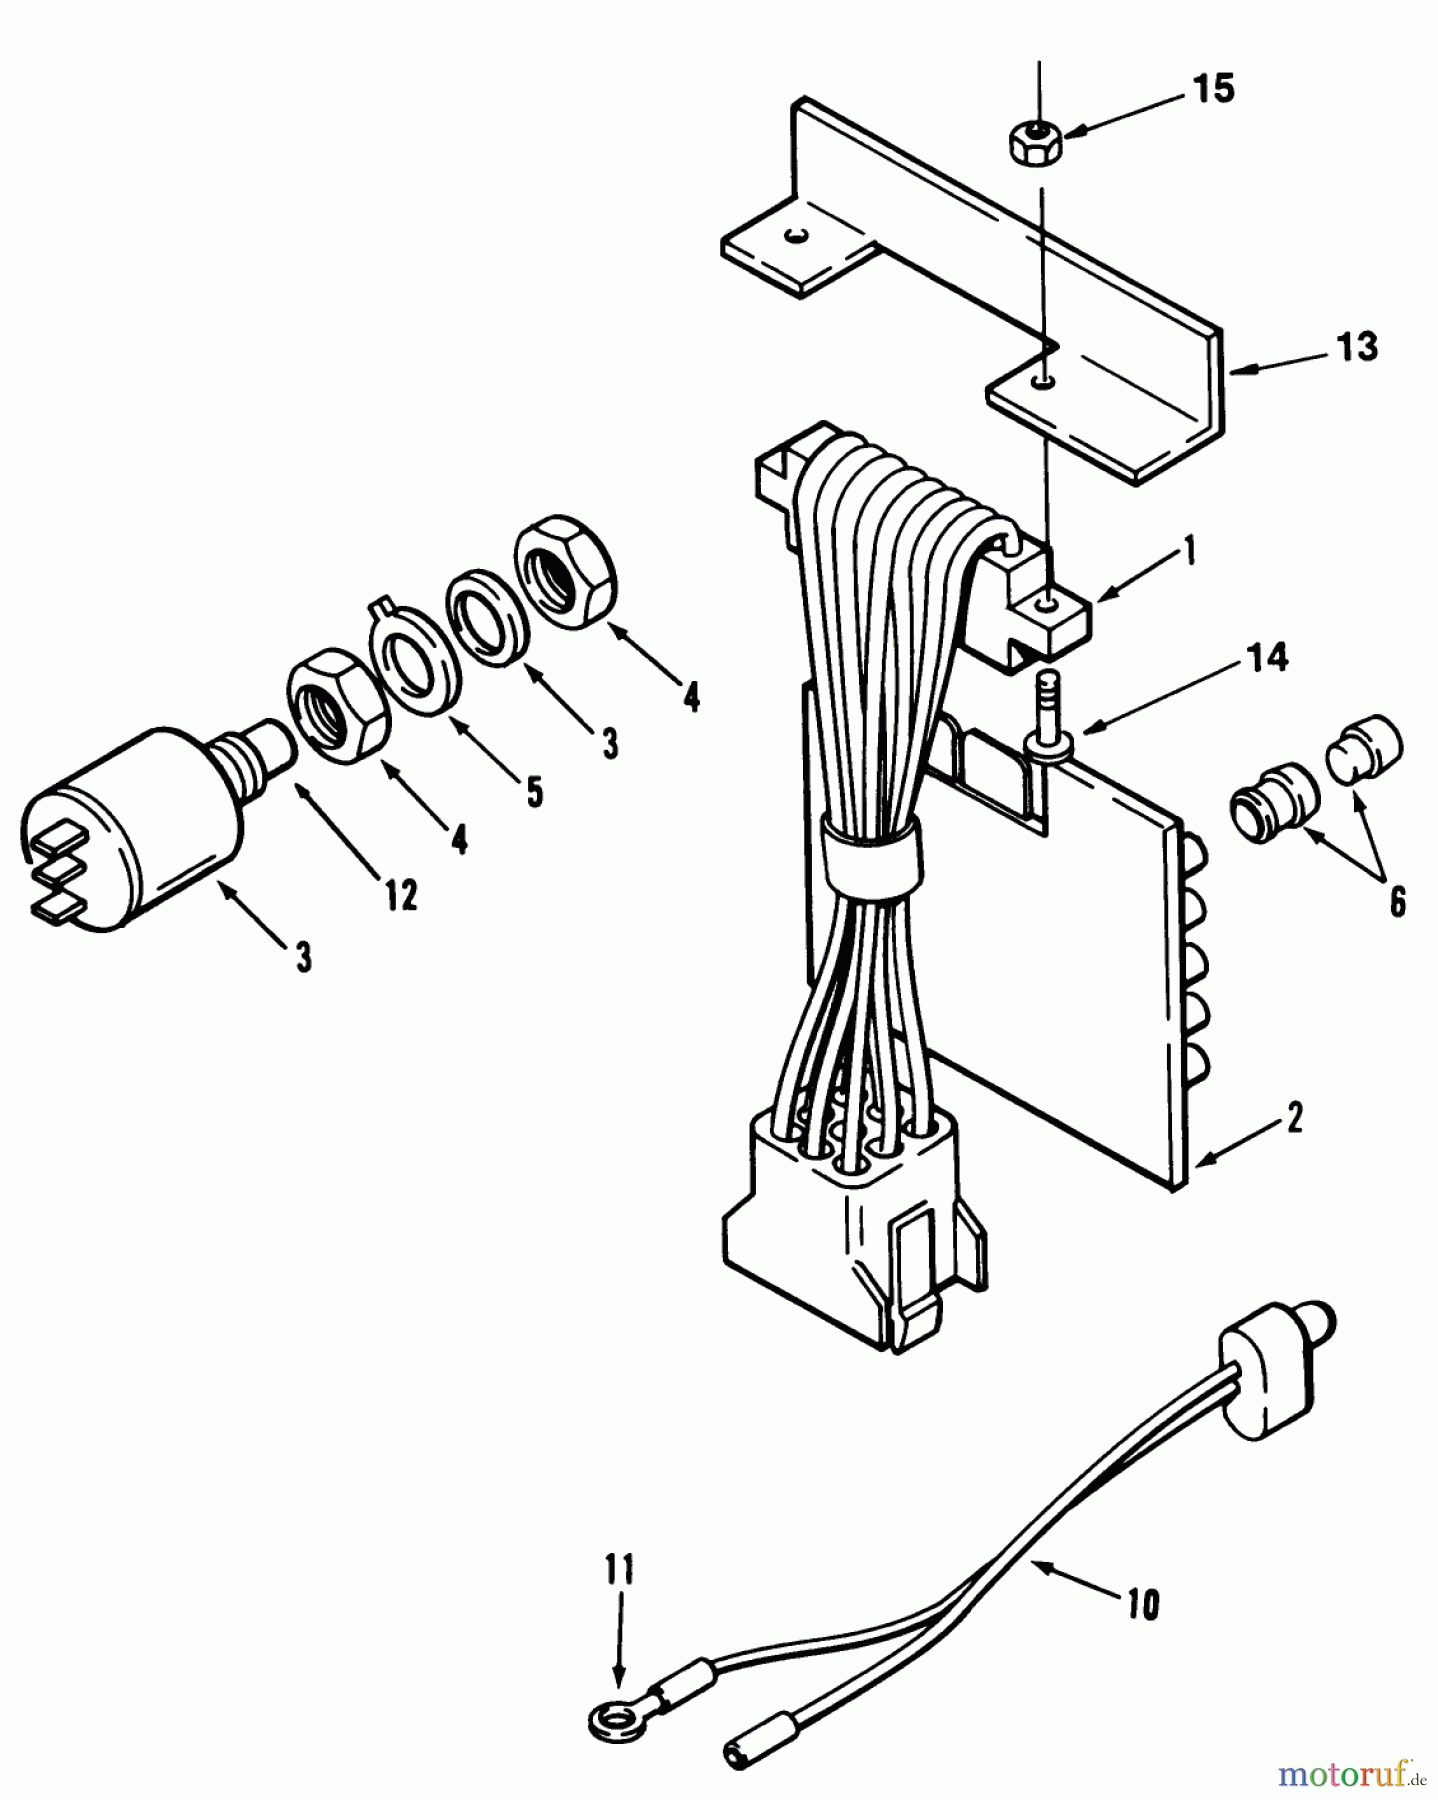  Toro Neu Mowers, Lawn & Garden Tractor Seite 1 31-16O804 (416-8) - Toro 416-8 Garden Tractor, 1992 (2000001-2999999) ELECTRICAL SYSTEM #2